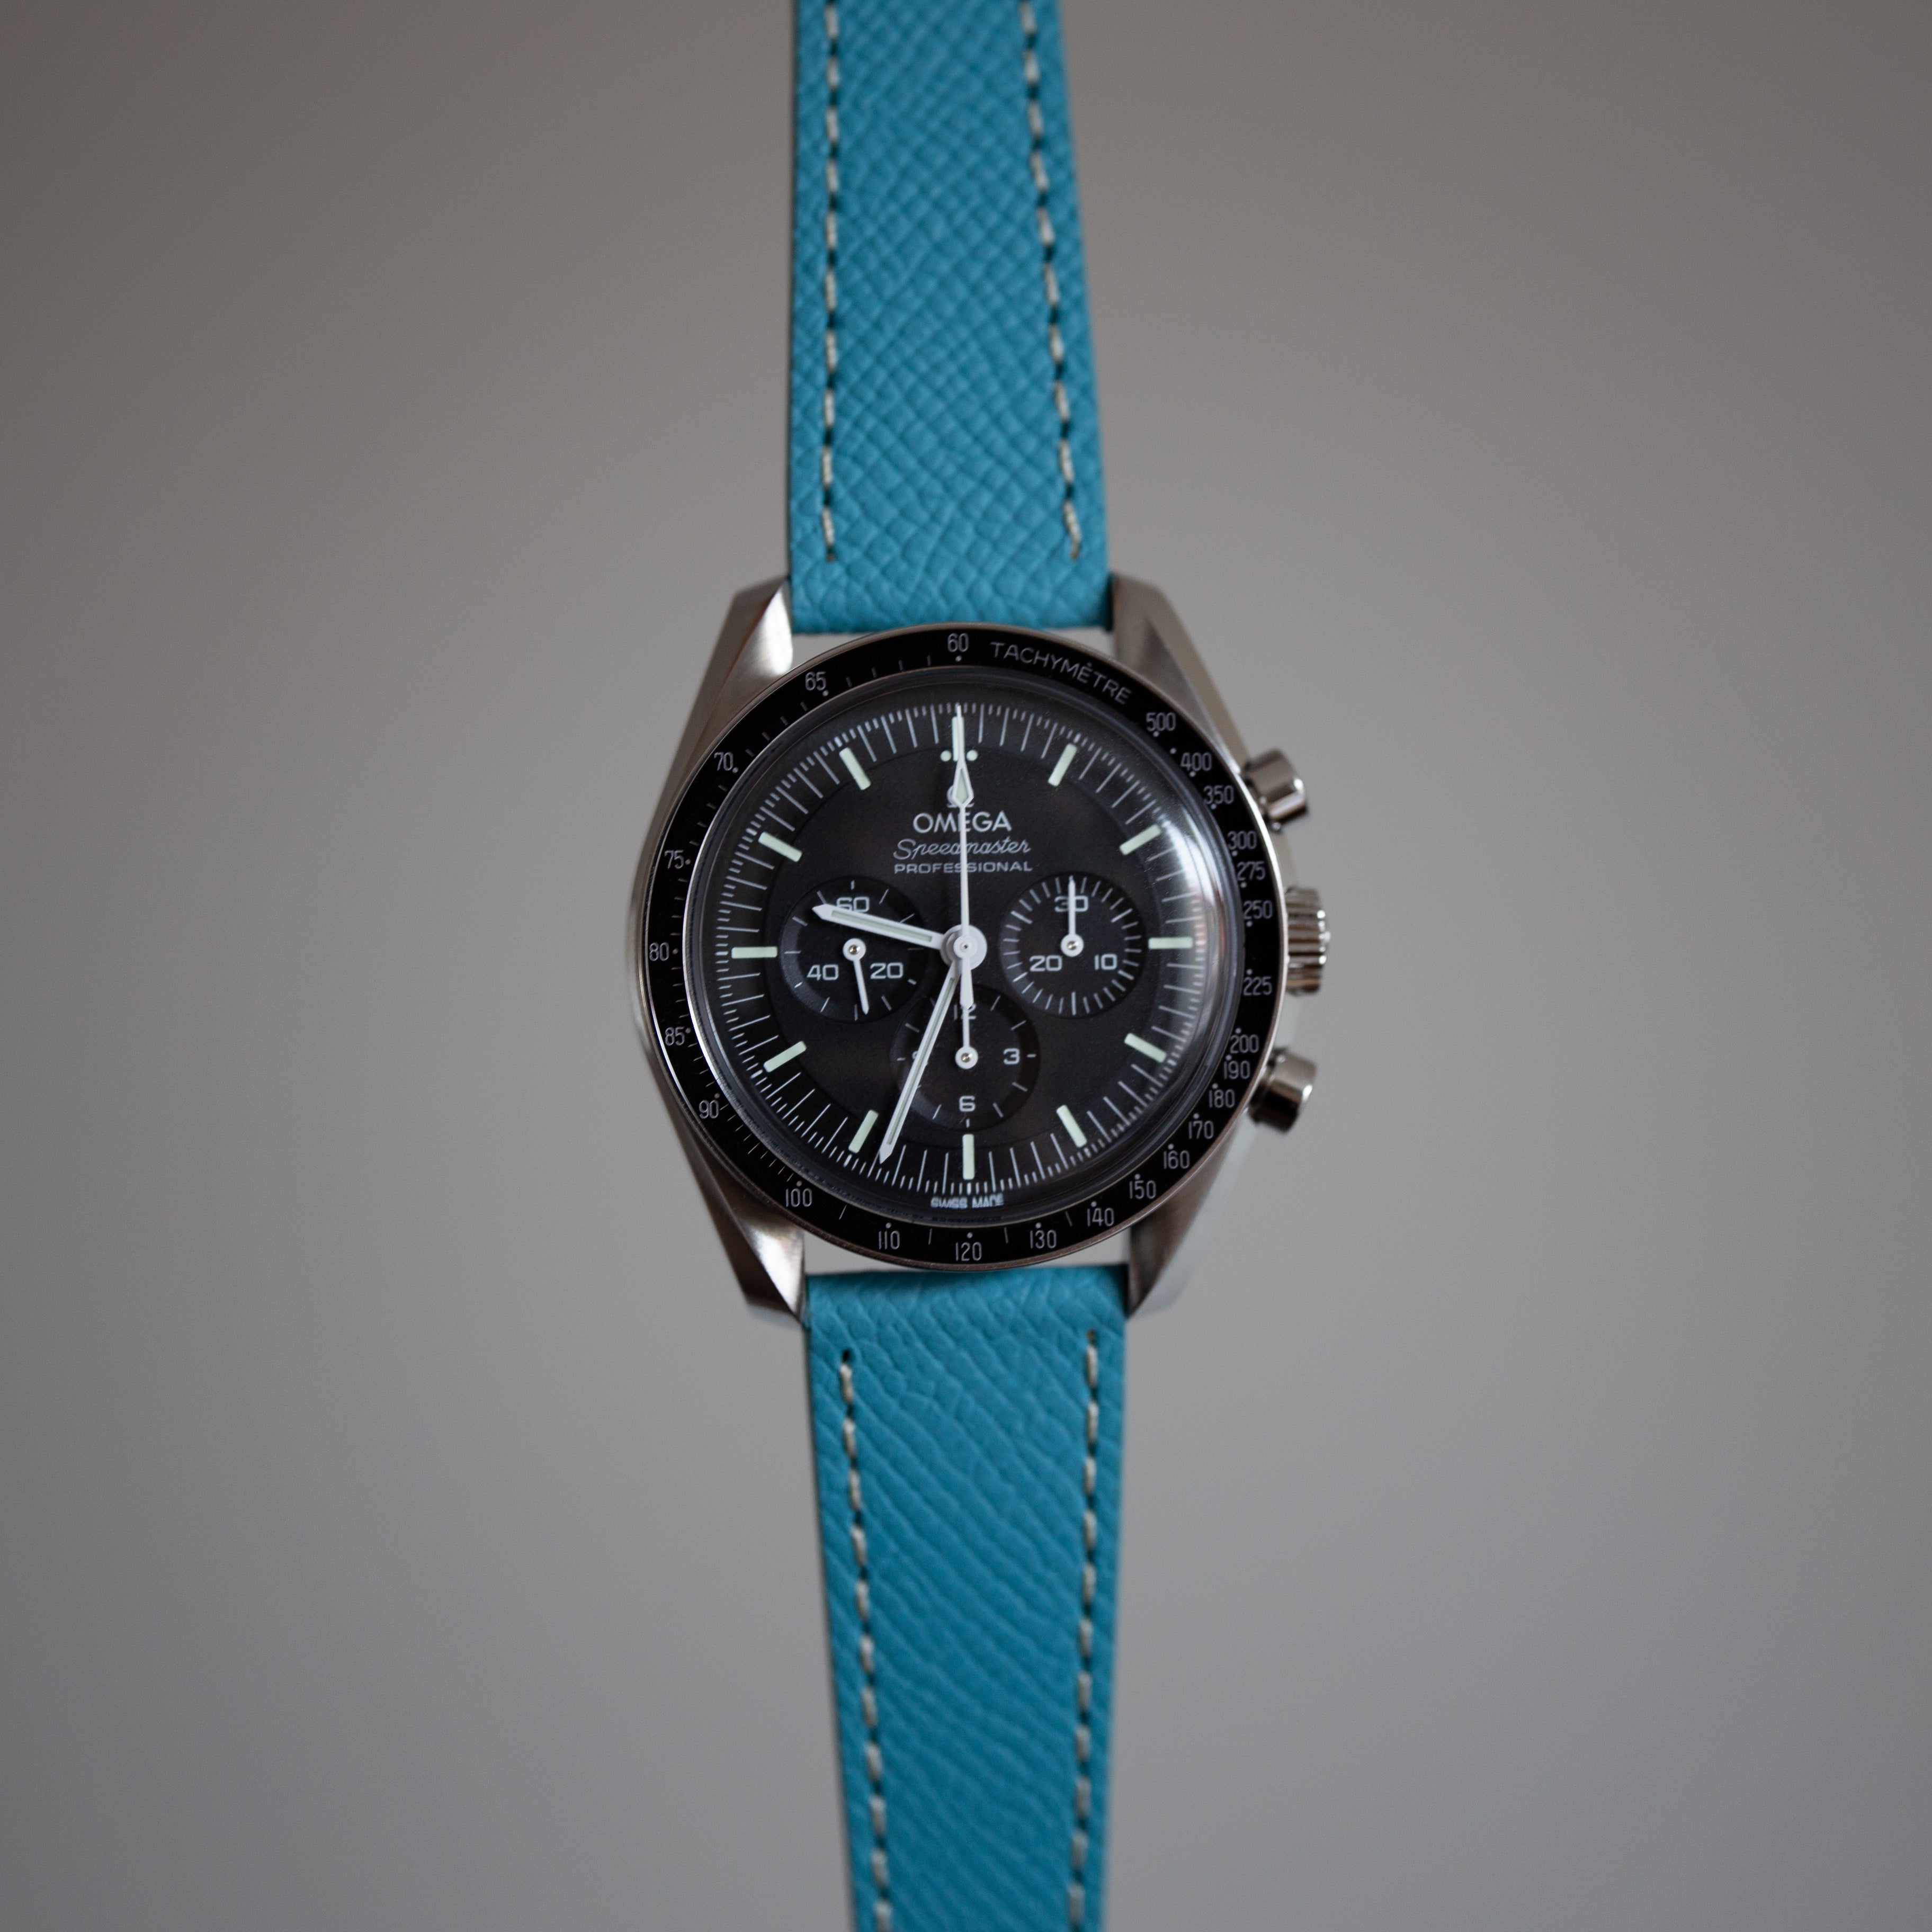 Speedmaster Leather Watch Strap Light Blue